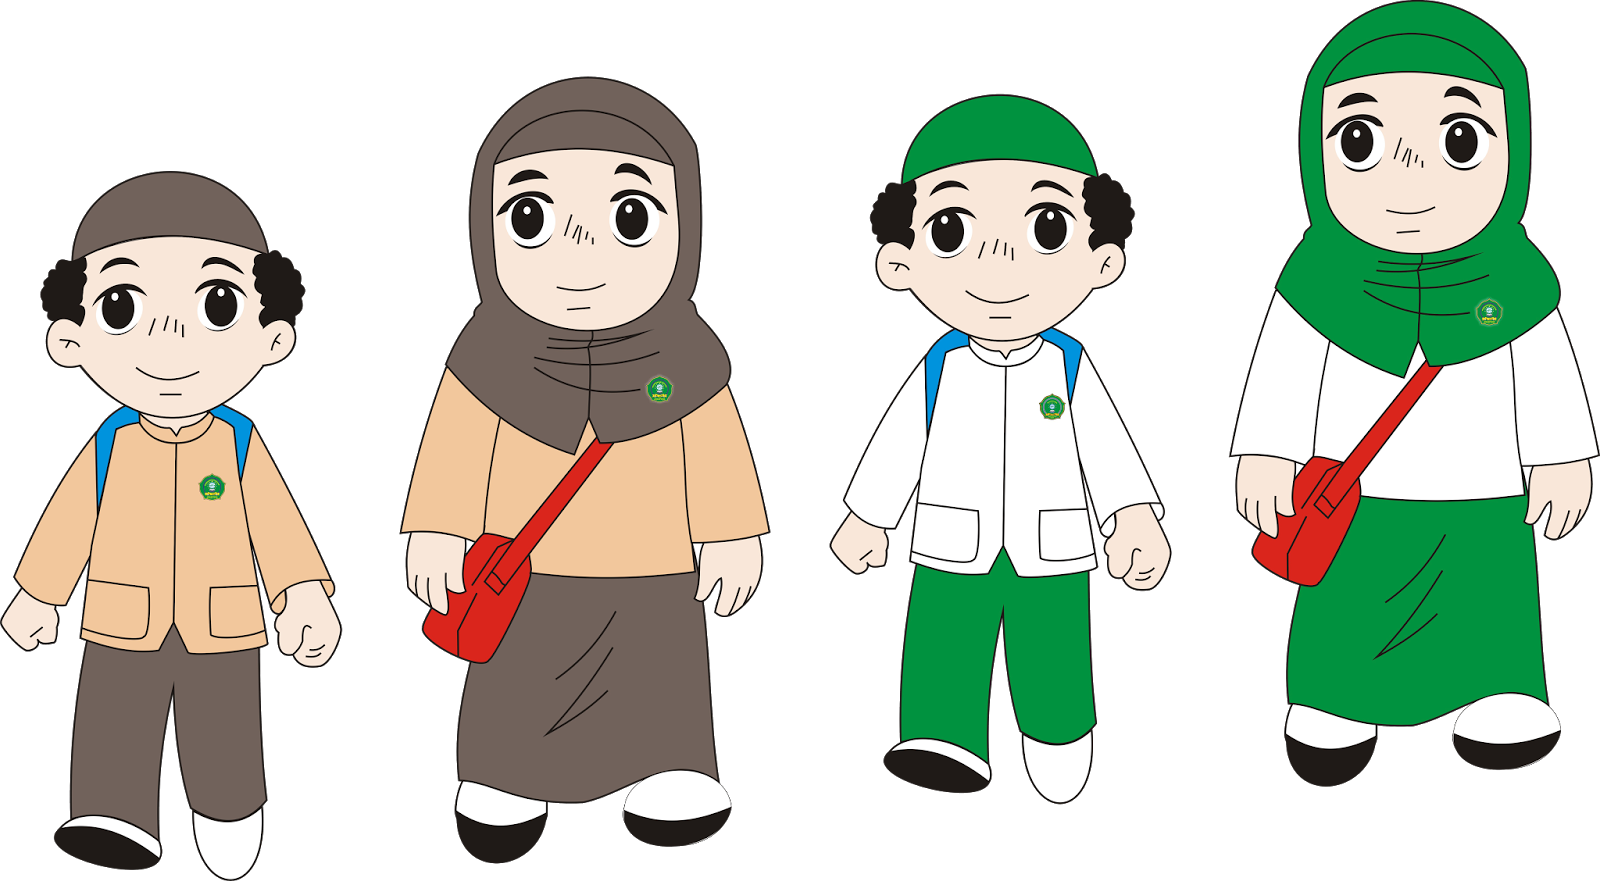  Gambar  Kartun  Muslimah Animasi  Anak  Sekolah  HijabFest